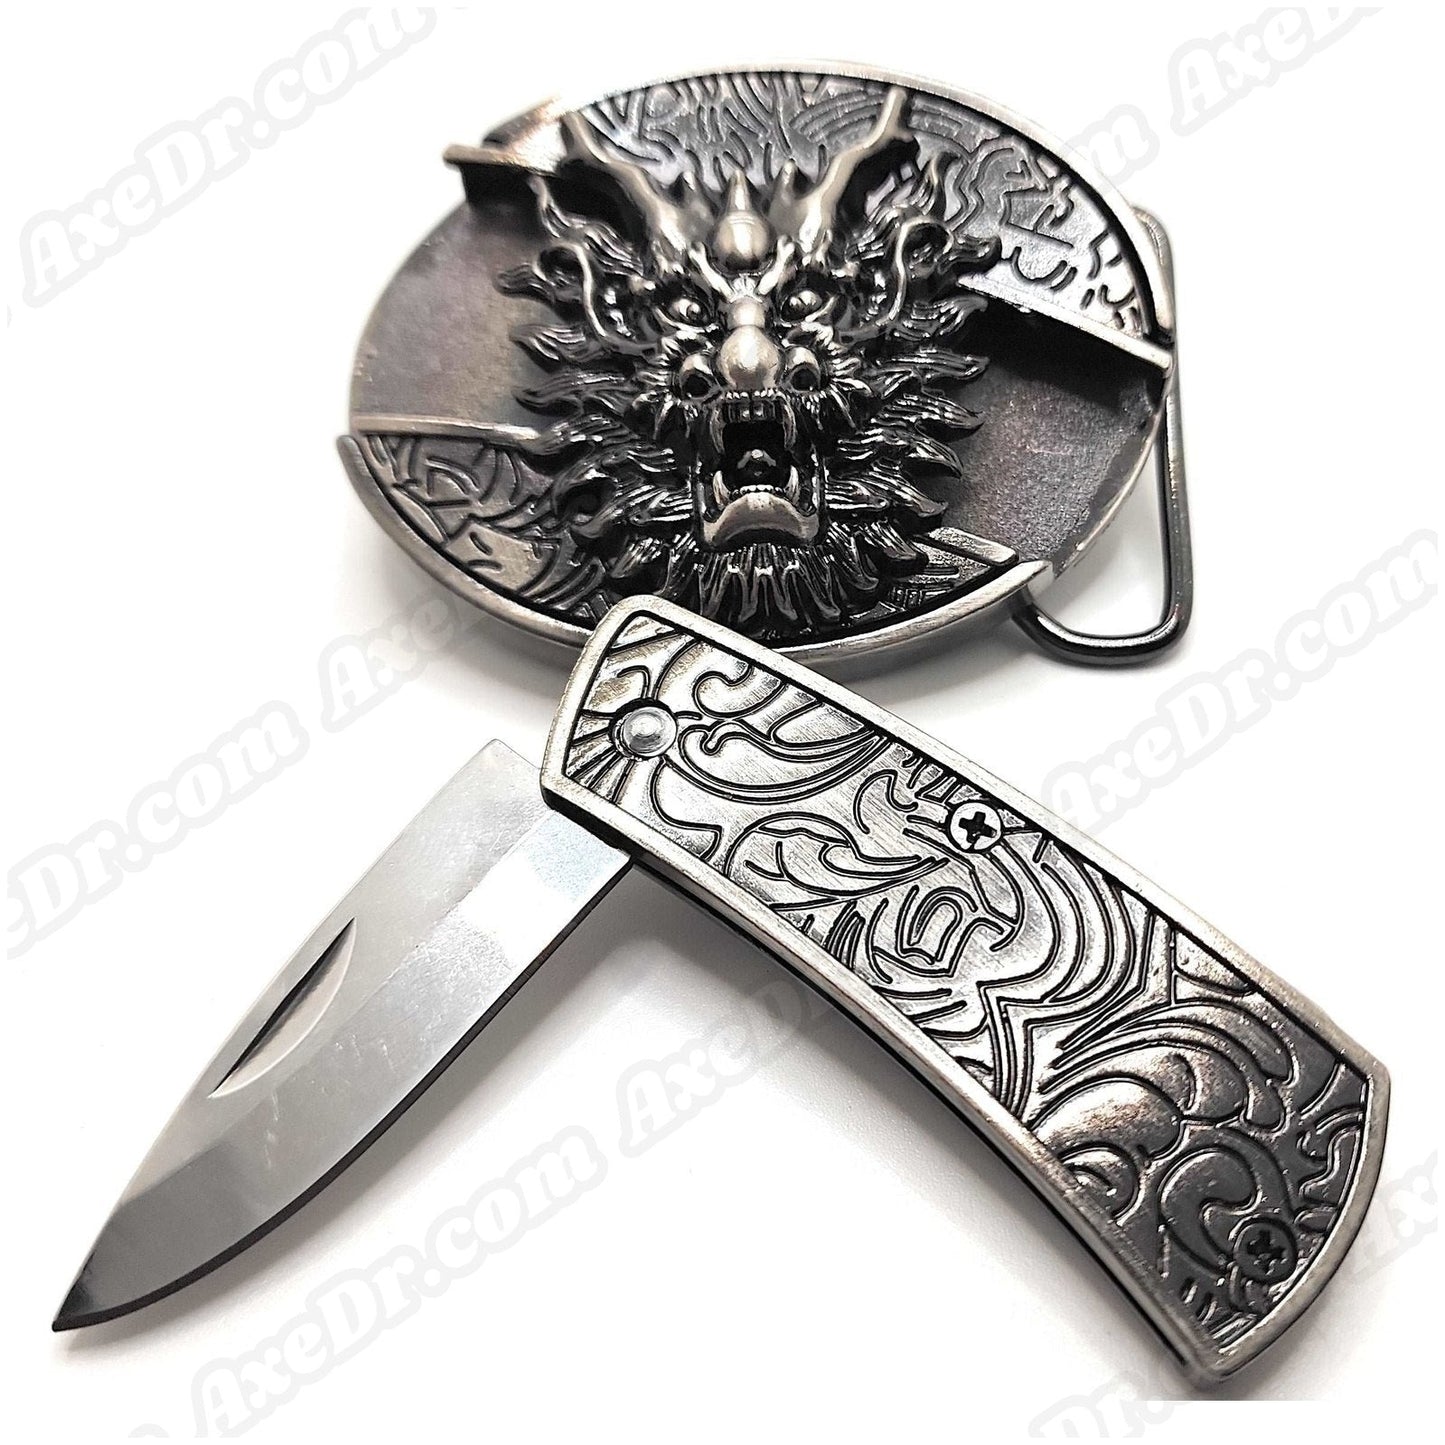 Dragon Head Folding Knife Belt Buckle shop.AxeDr.com Belt Buckle, Knife Belt Buckle